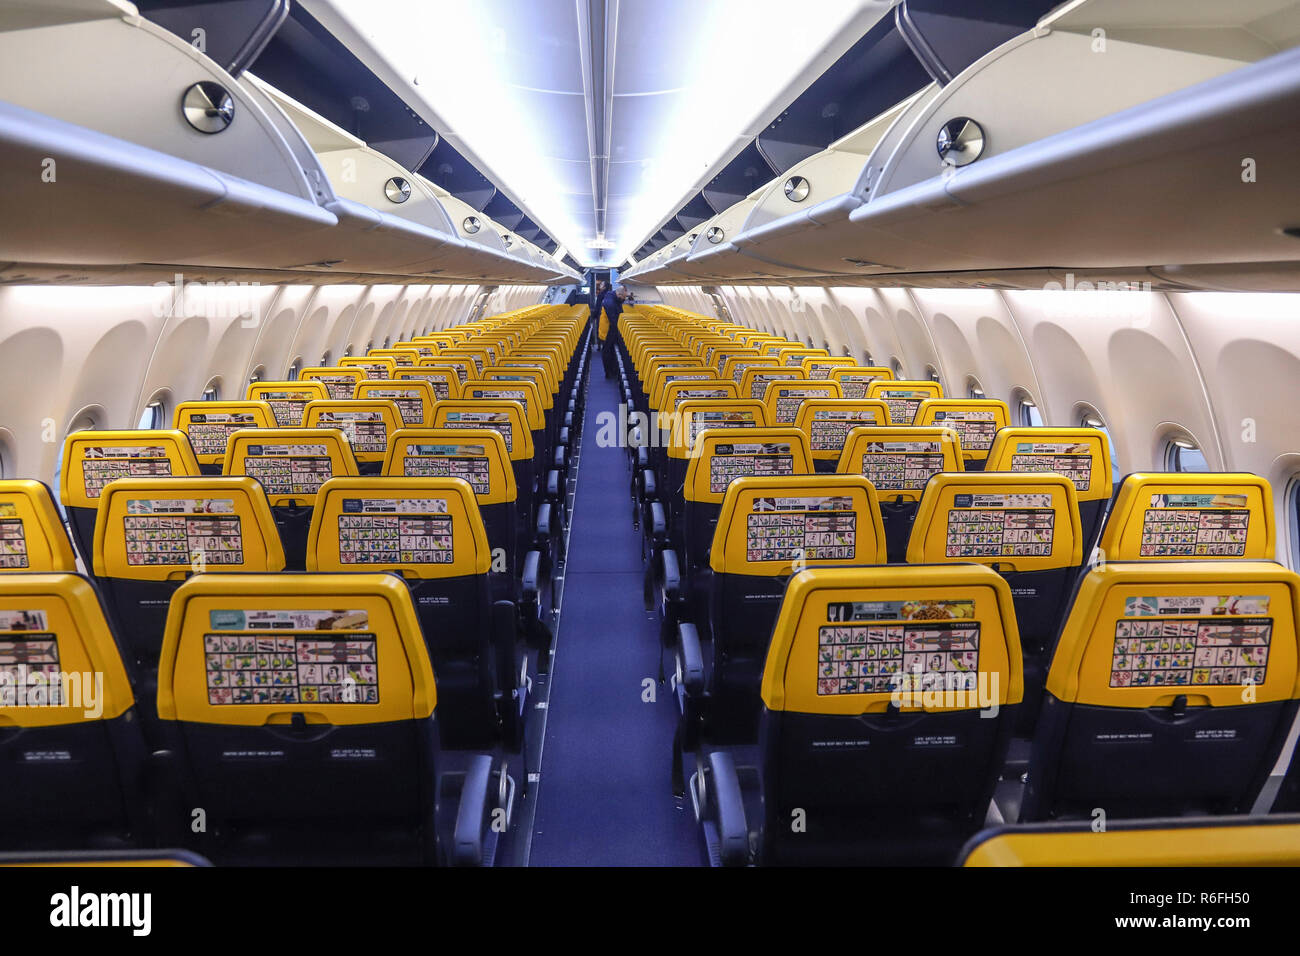 Le nouveau Boeing Sky Interior cabin de Ryanair. l'avion est un Boeing 737-800  spécifiquement un Boeing 737 Next Gen ou 737-8COMME(WL) avec l'inscription  EI-FZL. Ryanair est un transporteur à faibles coûts basée